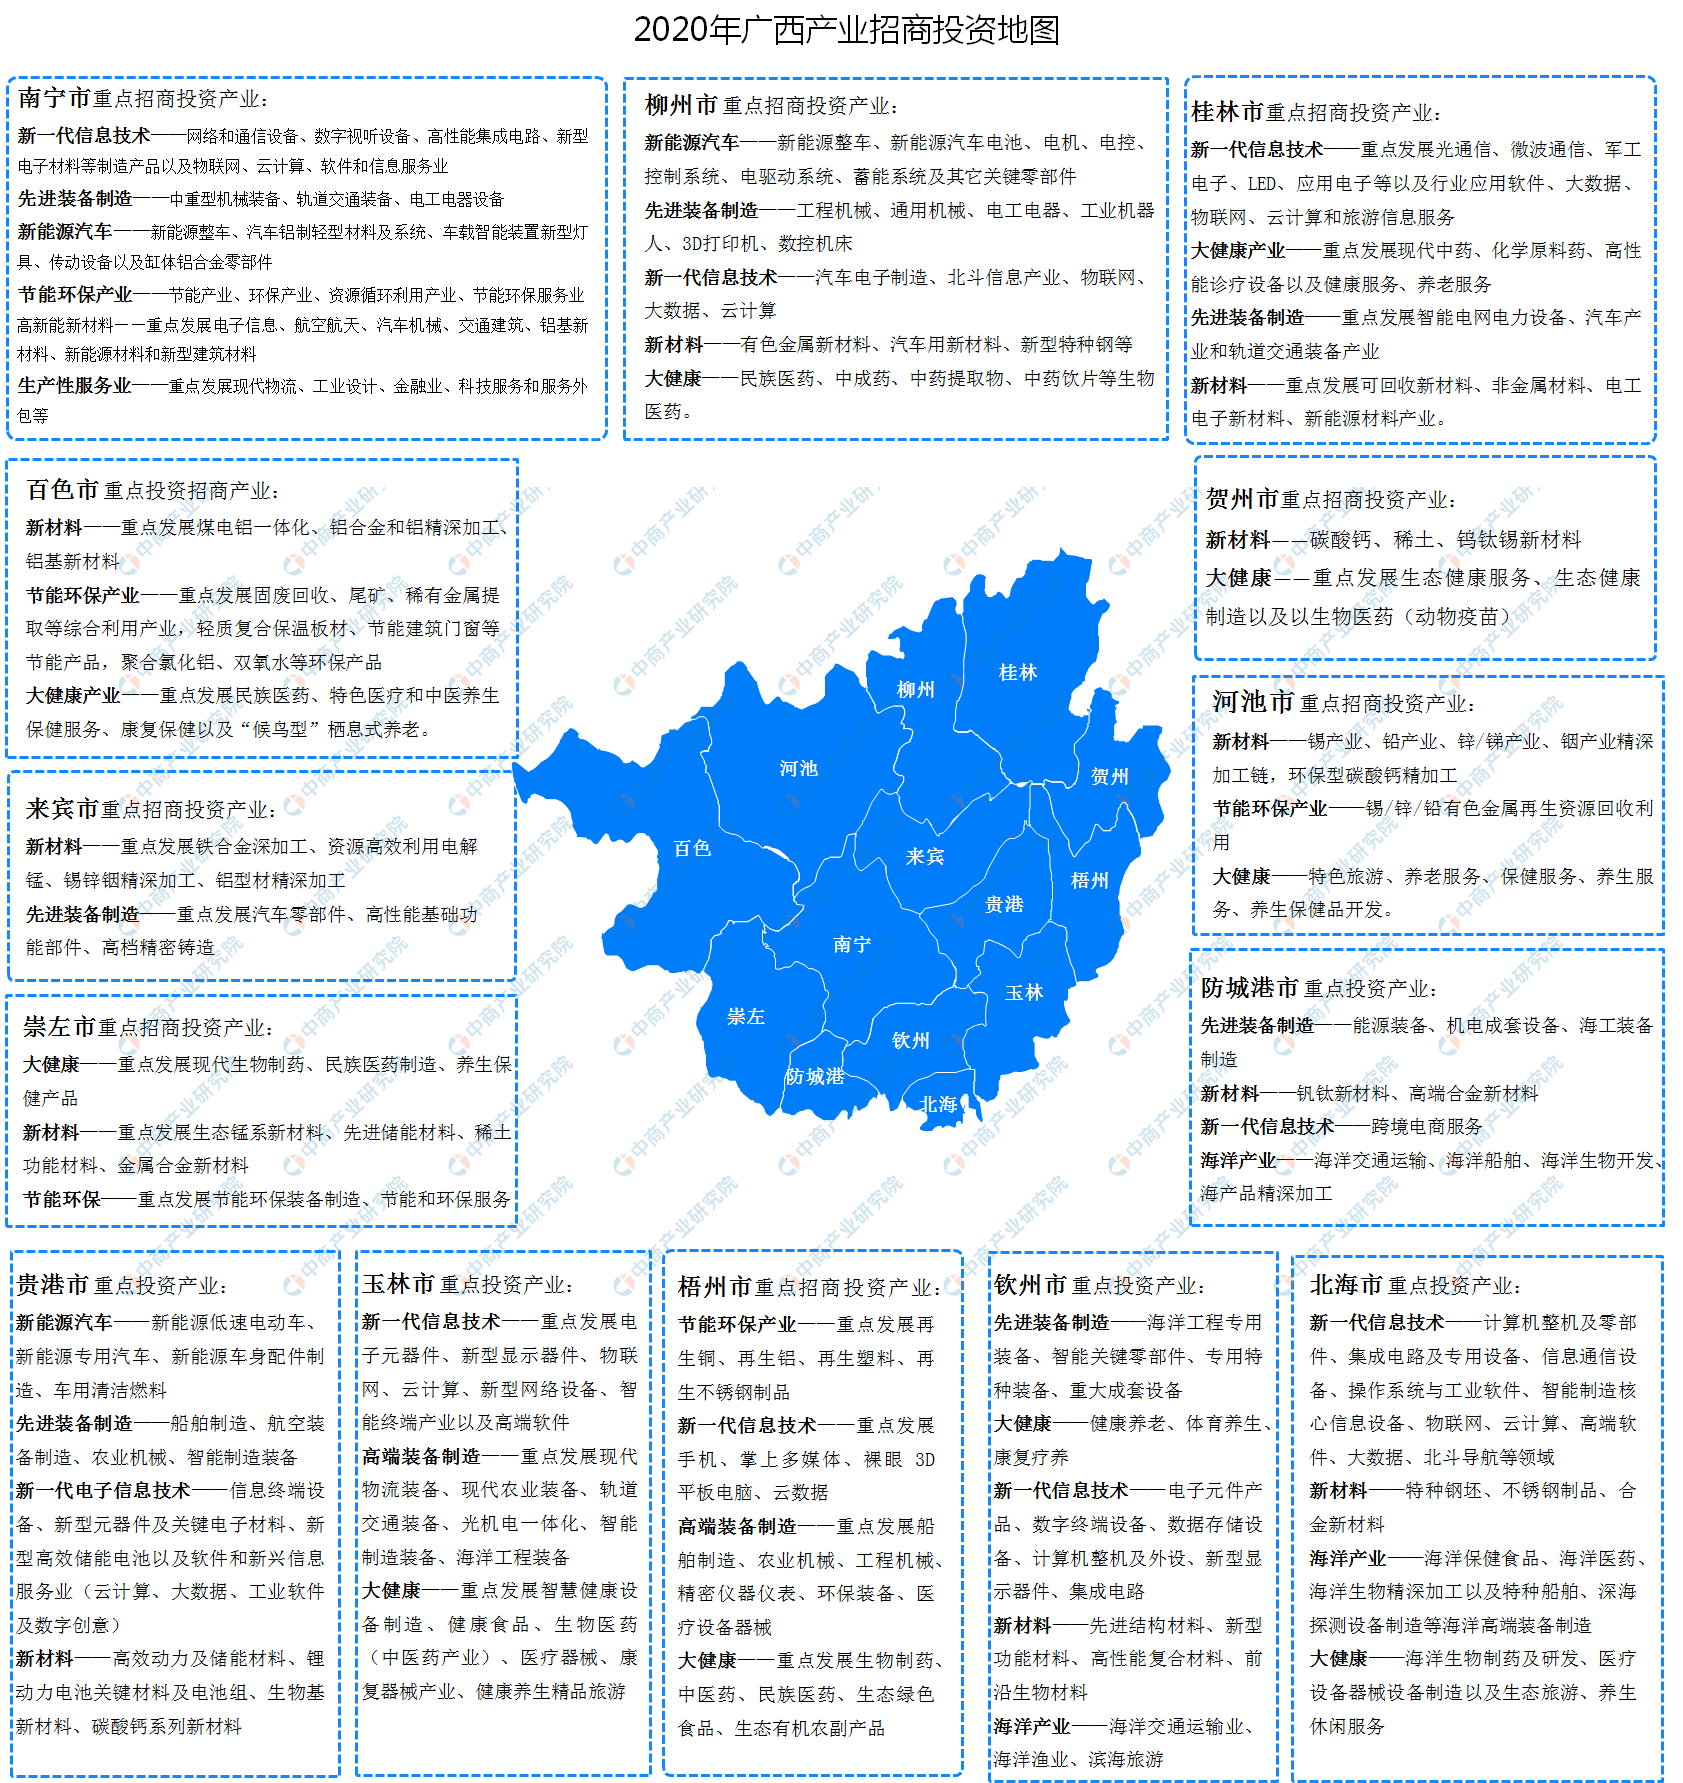 2020年广西各地产业招商投资地图分析